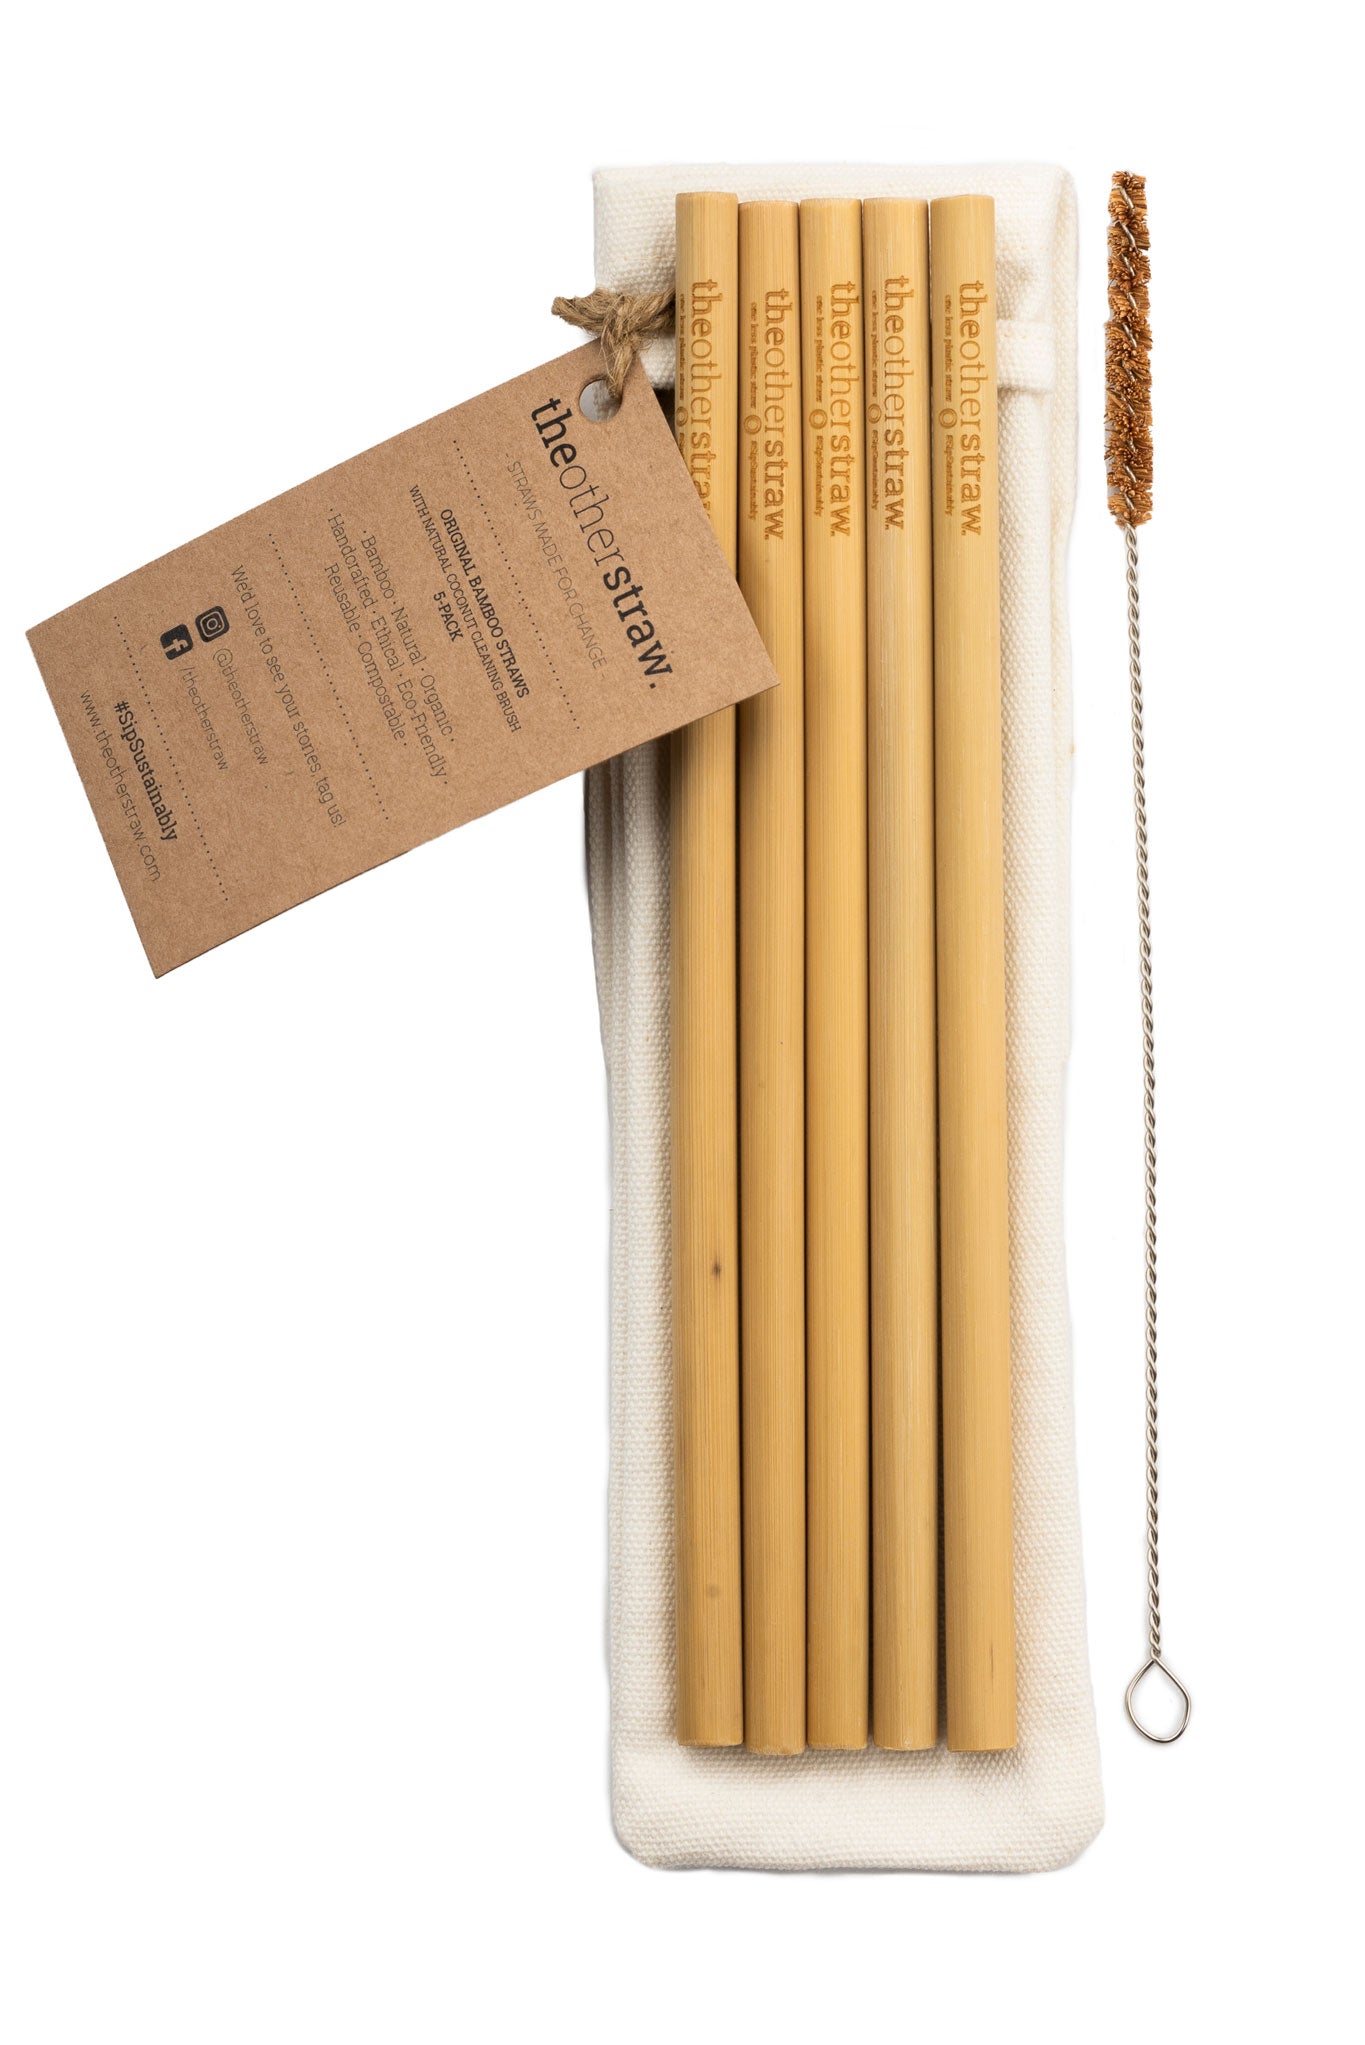 bamboo straws 5 pack